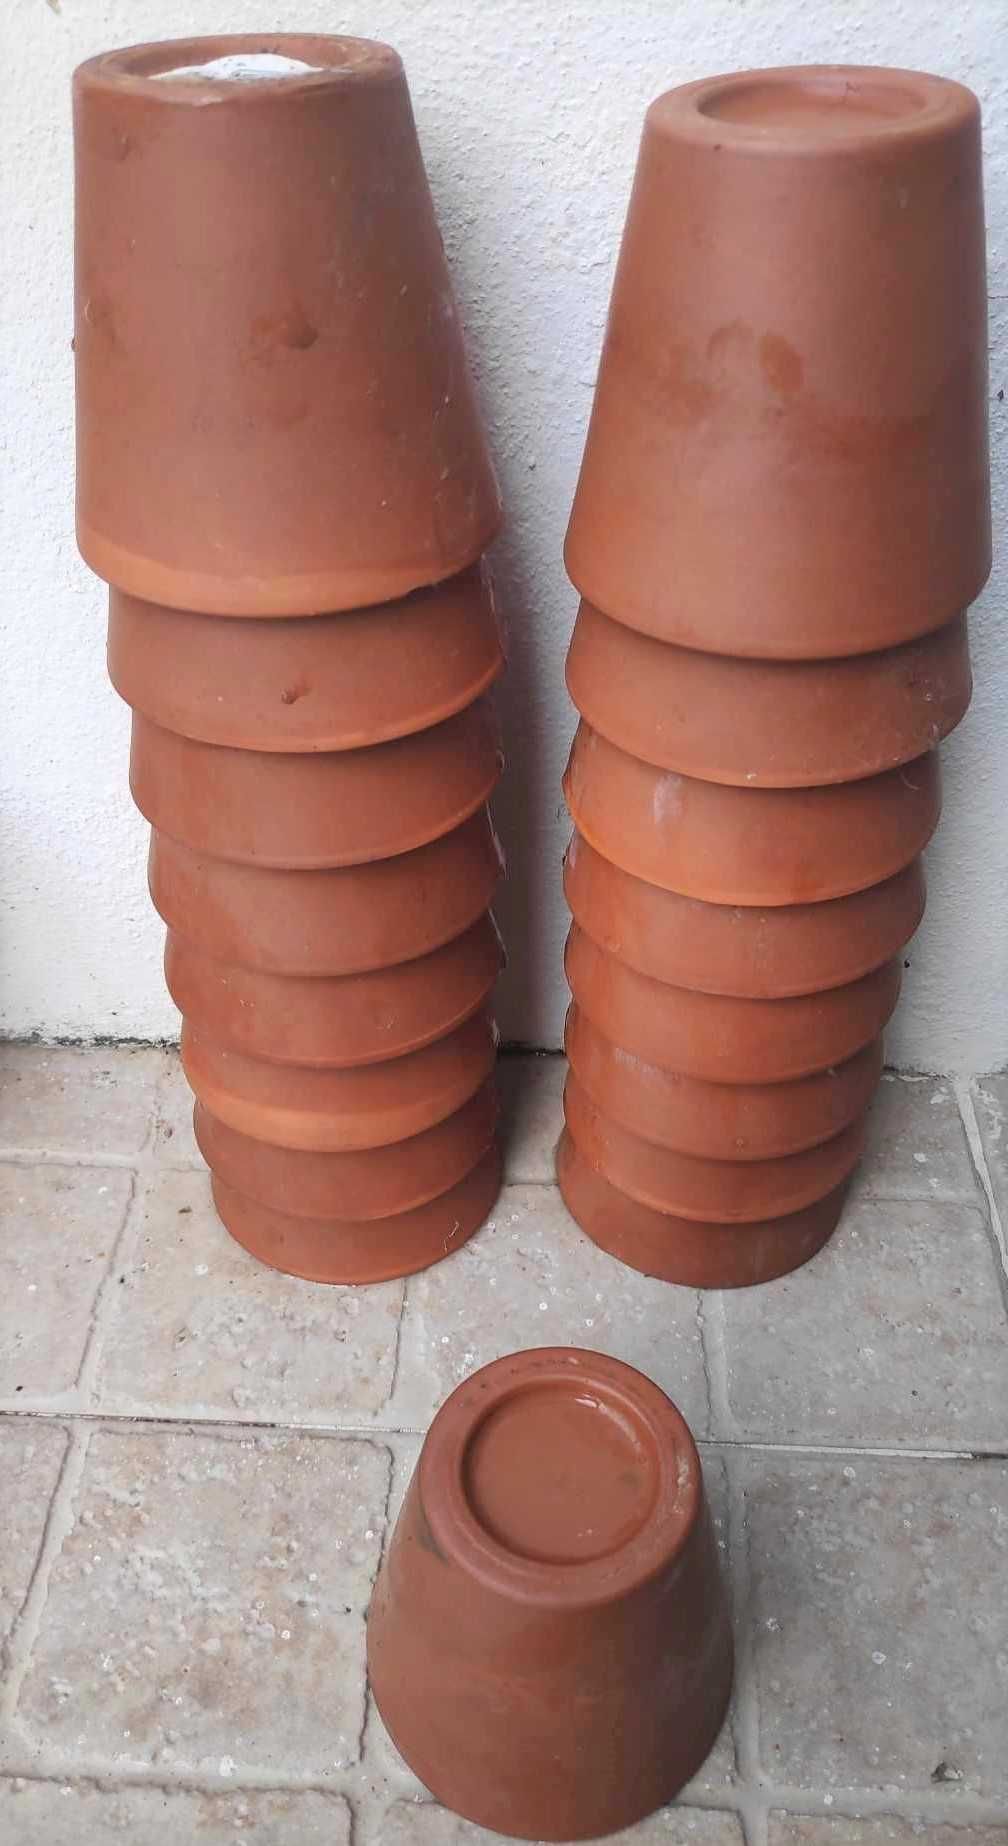 Mini vasos em barro para plantas naturais ou outras.